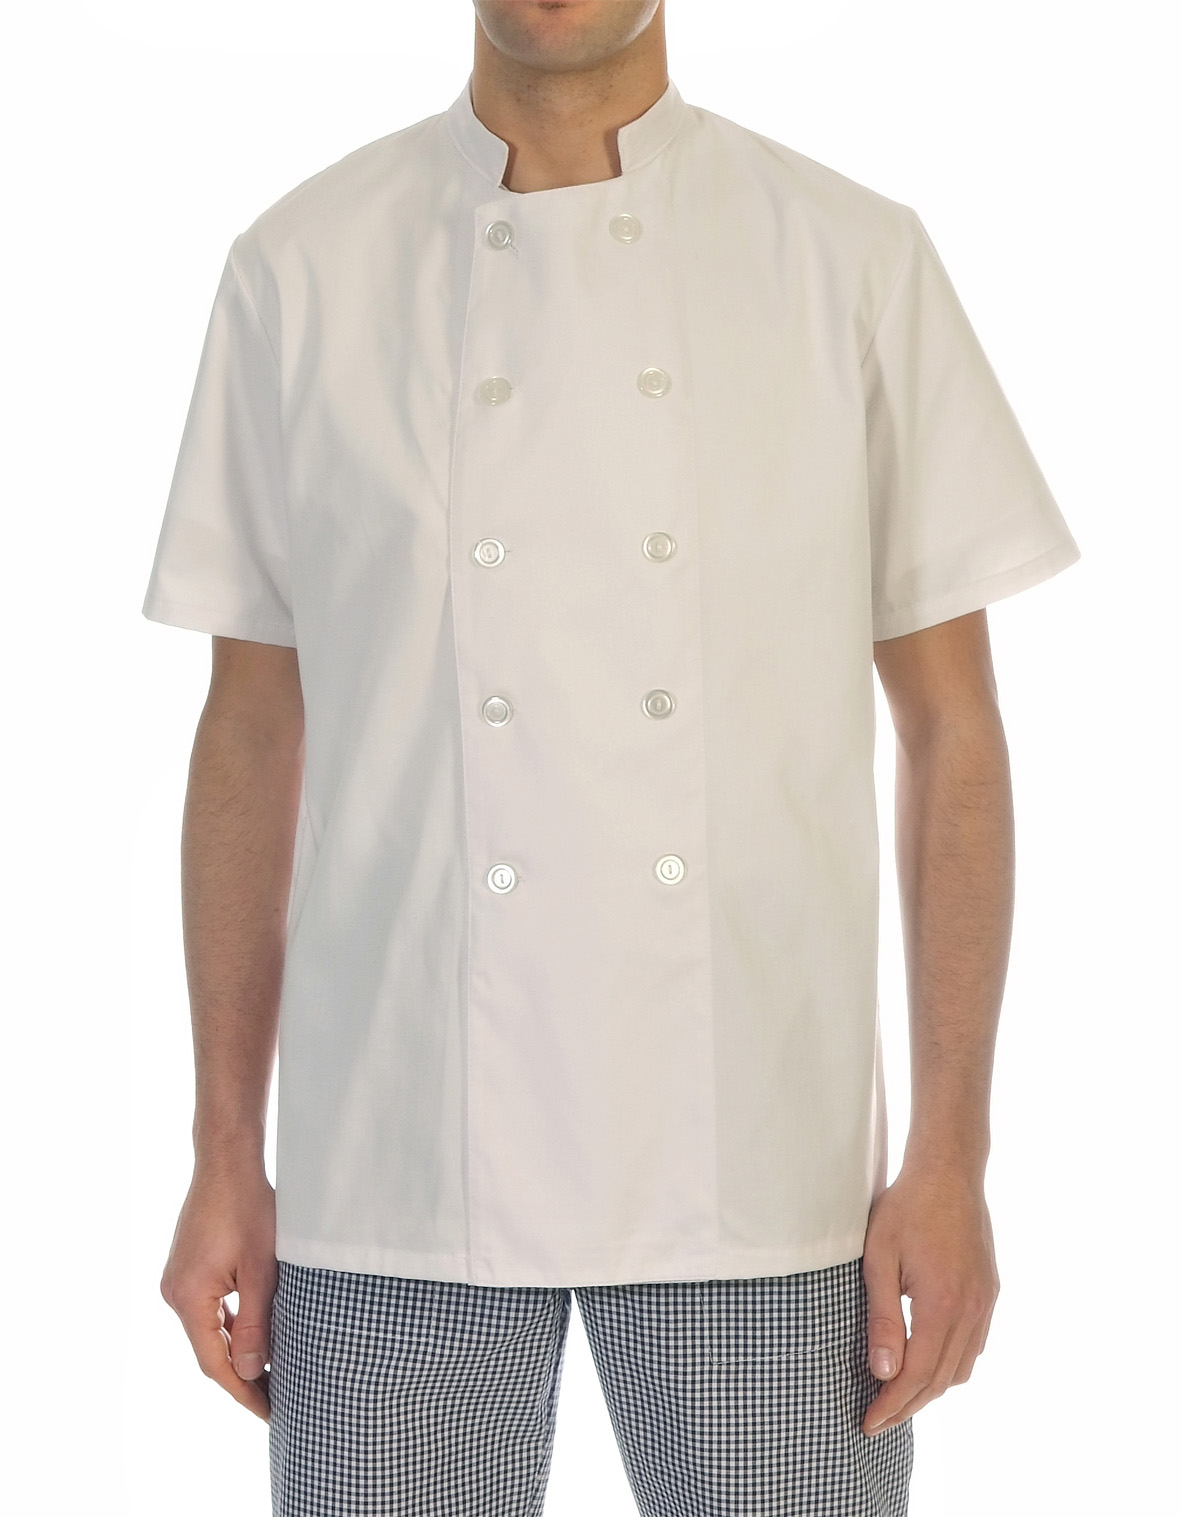 Comprar Pantalón de cocina a cuadros online - Tienda Uniformes cocinero  Madrid Pantalones 36.-68. 36. Color Cuadros Azules